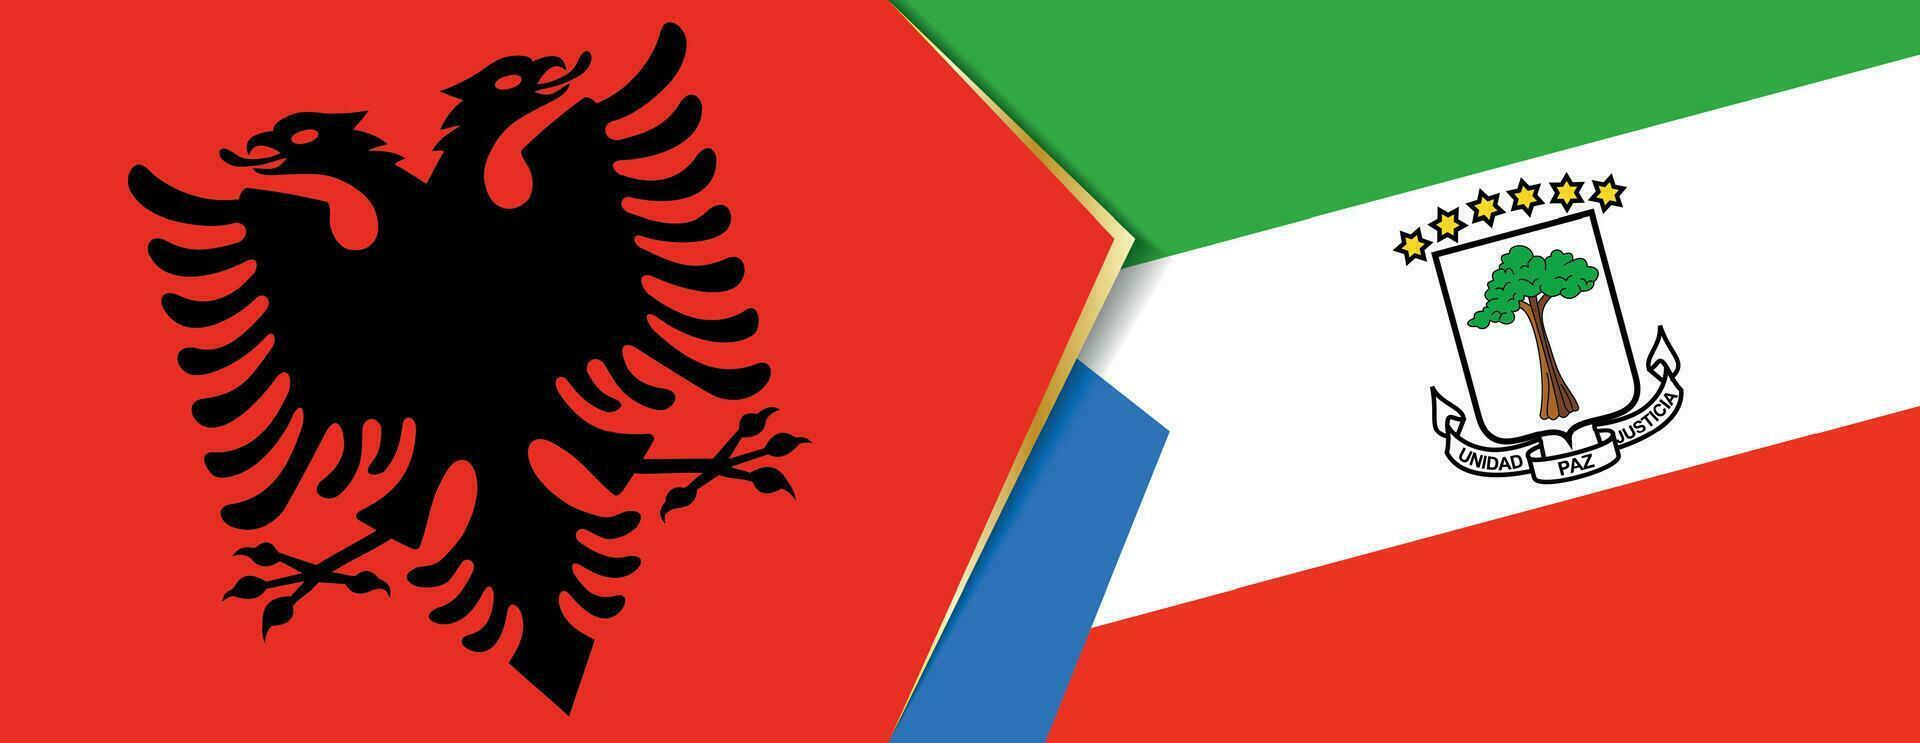 Albania e equatoriale Guinea bandiere, Due vettore bandiere.